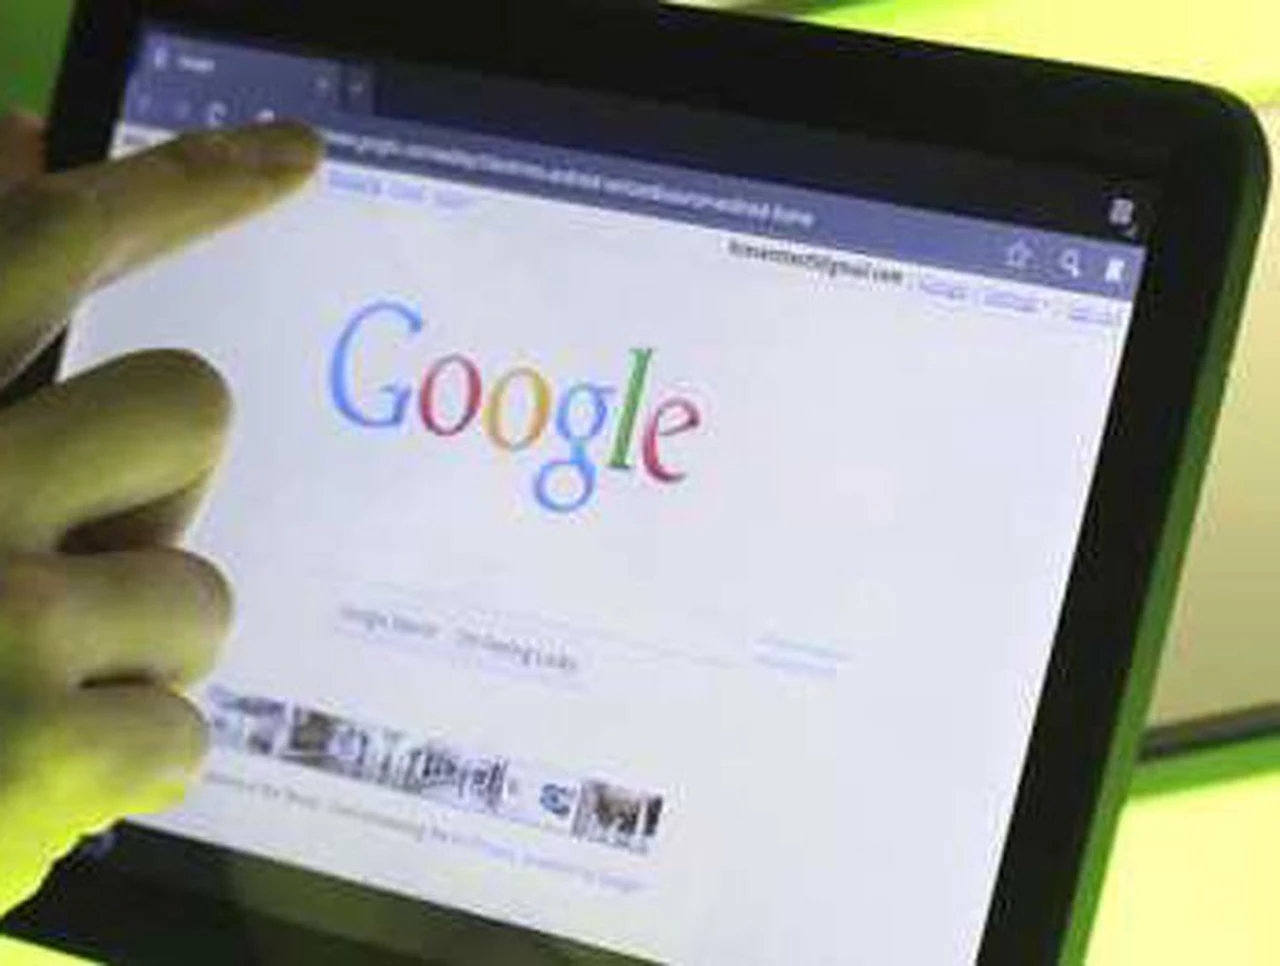 Google recibe 2,4 millones de búsquedas por minuto